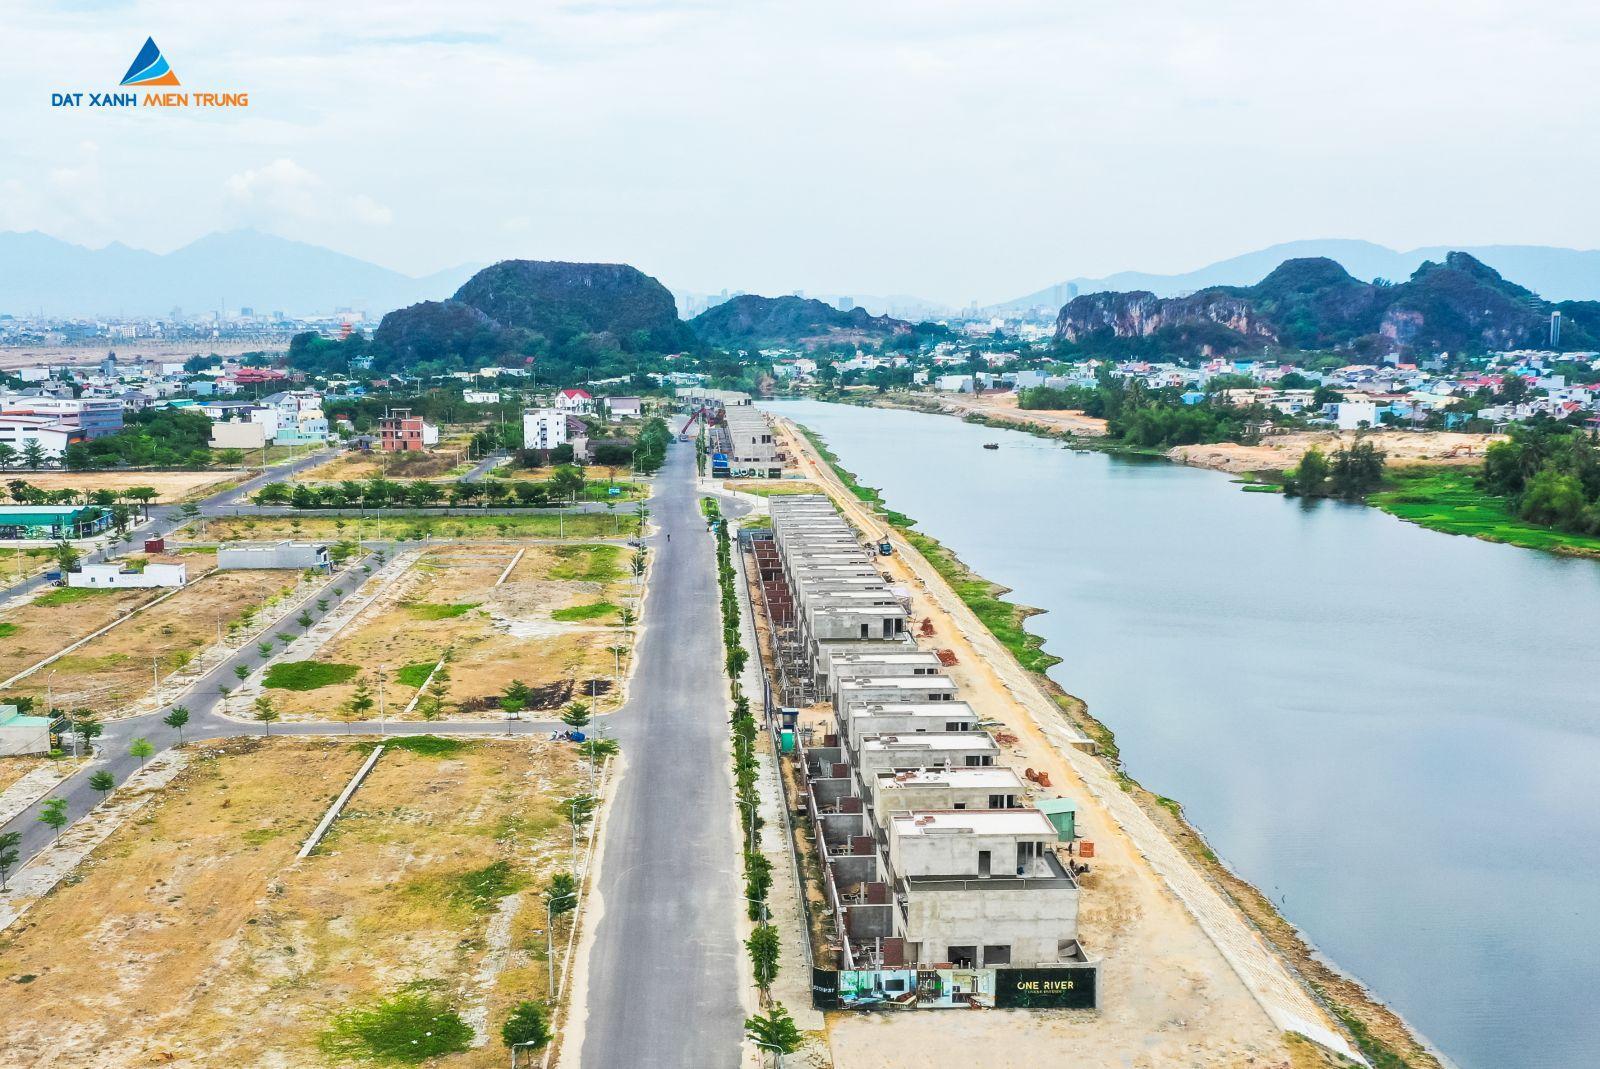 [GÓC CẬP NHẬT] DỰ ÁN ONE RIVER VILLAS THÁNG 07/2019 - Viet Nam Smart City